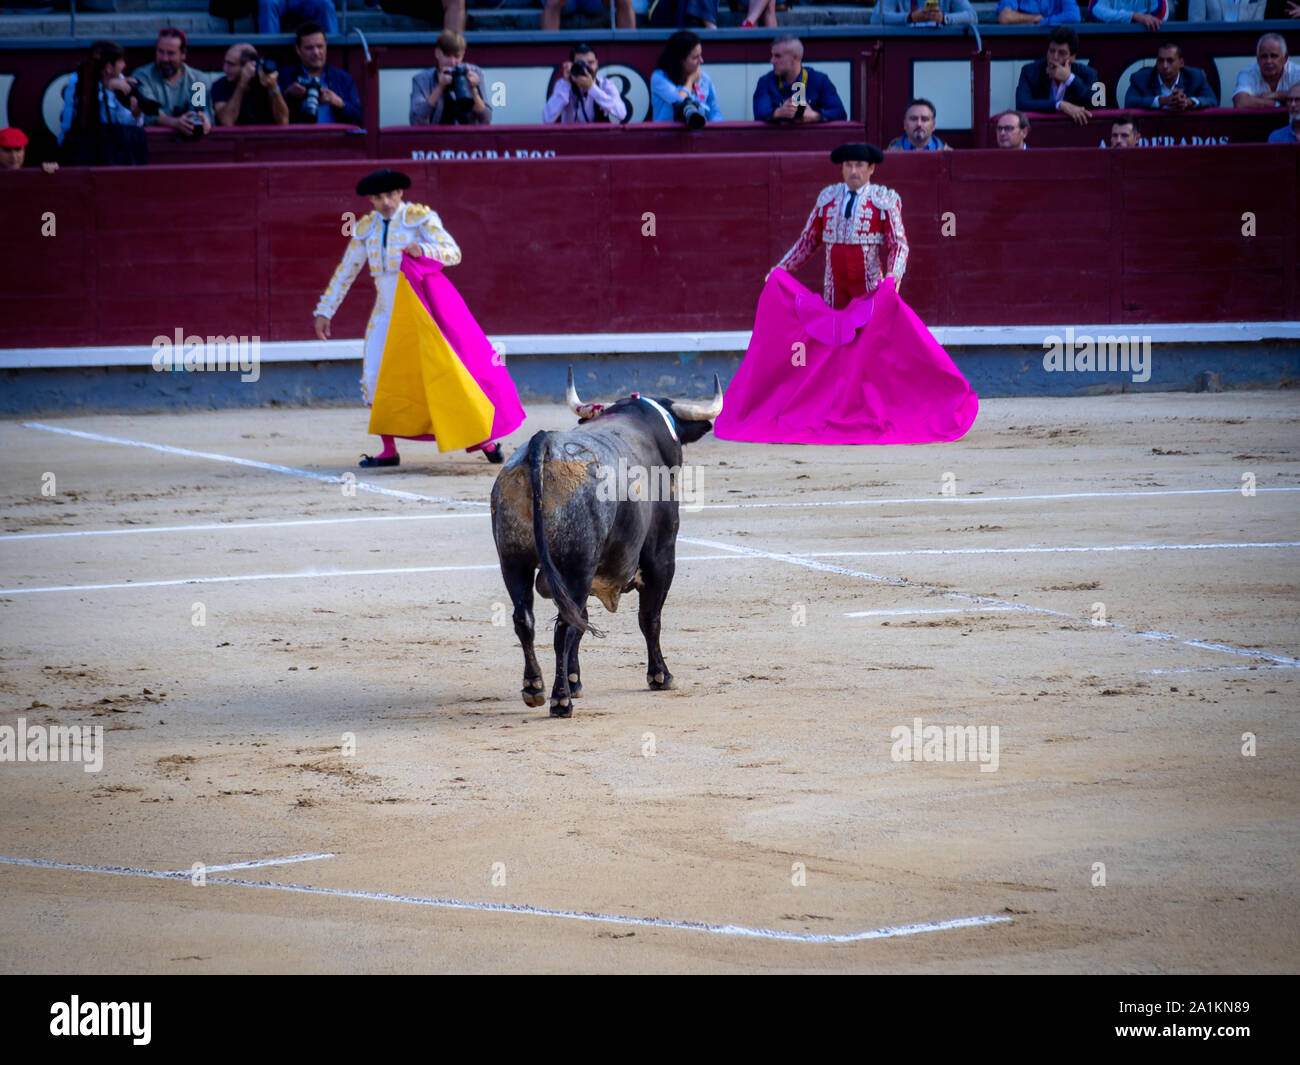 MADRID, España, 22 de septiembre de 2019: la primera etapa de la corrida de toros, el Tercio de varas ('parte de lanzas"). Matadores y toros en la plaza de toros (plaza de toros) d Foto de stock